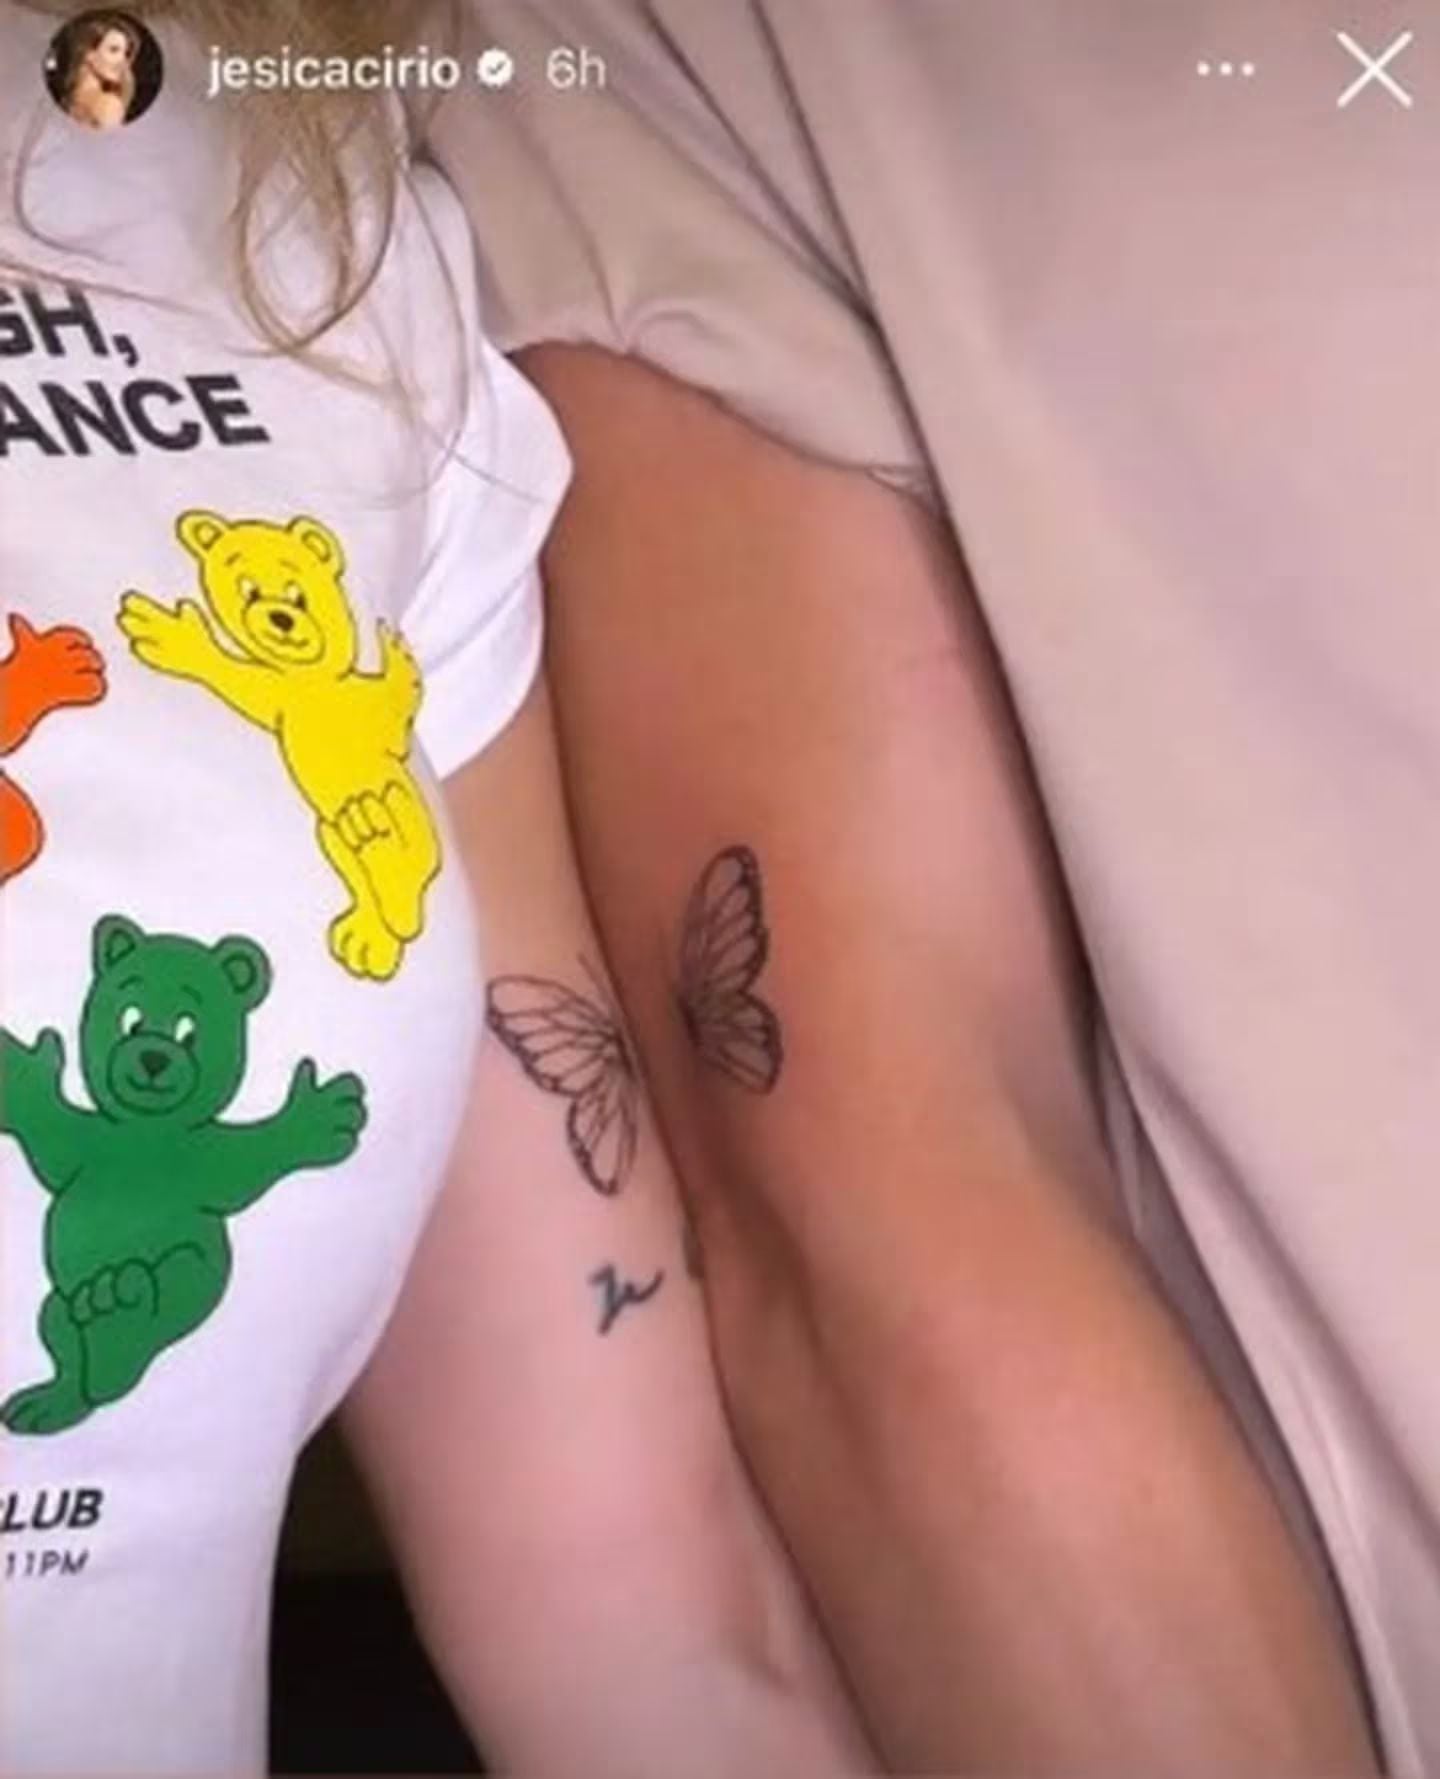 Jesica Cirio and her boyfriend got tattoos together